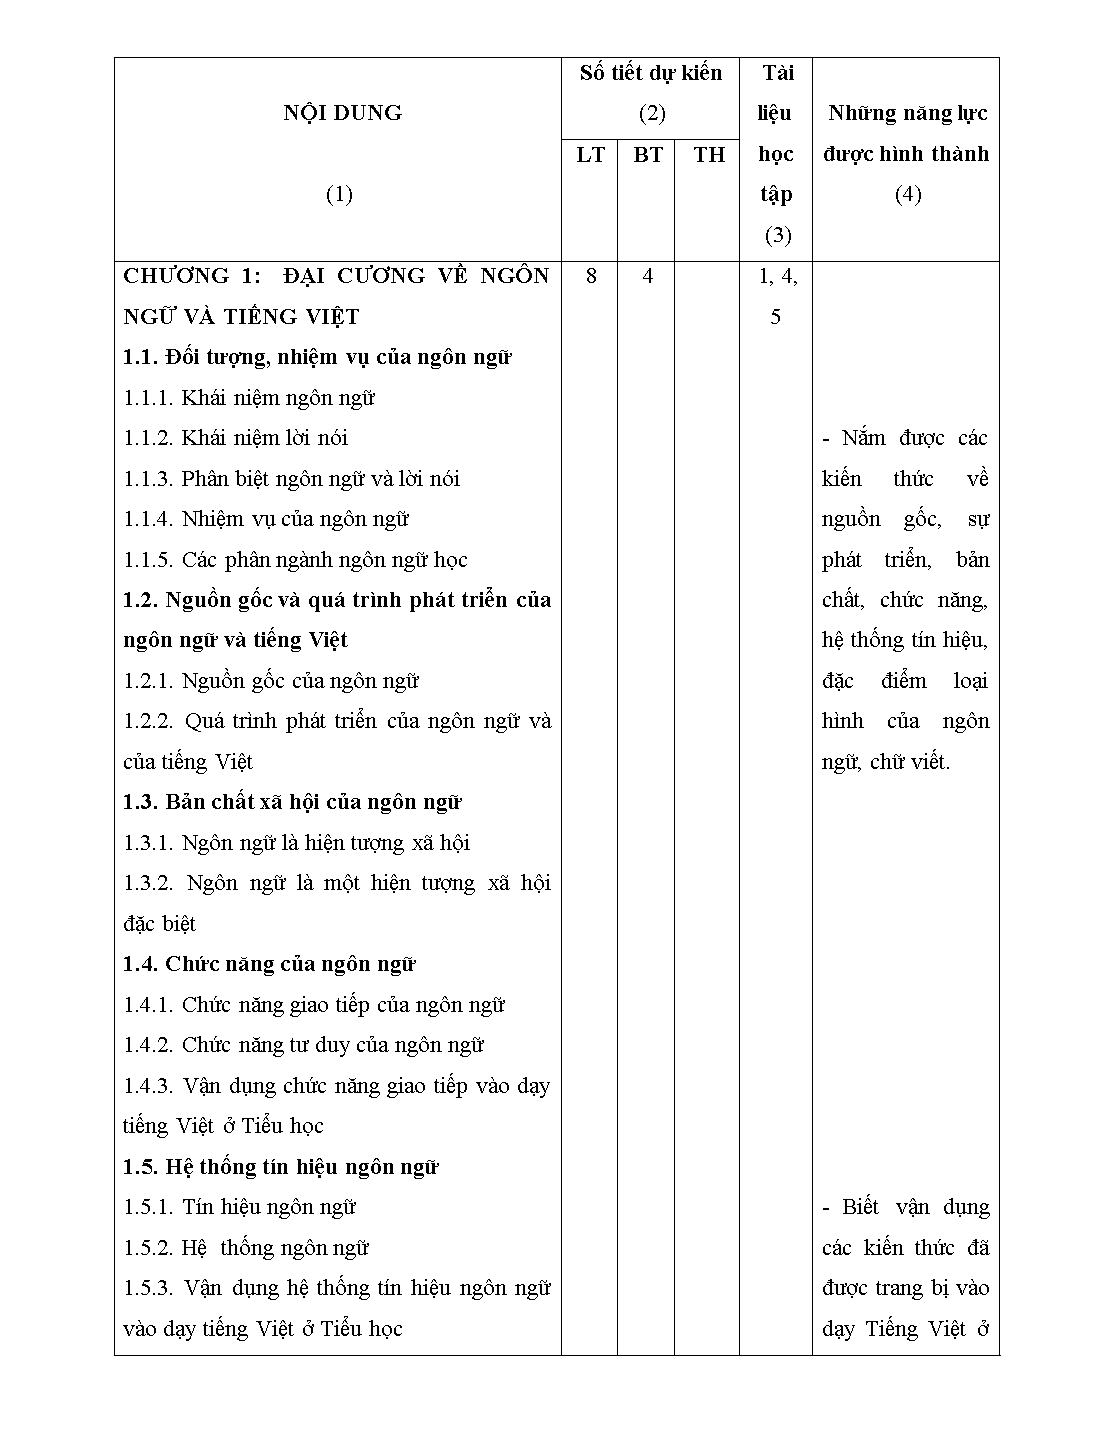 Đề cương môn học Tiếng Việt trang 3